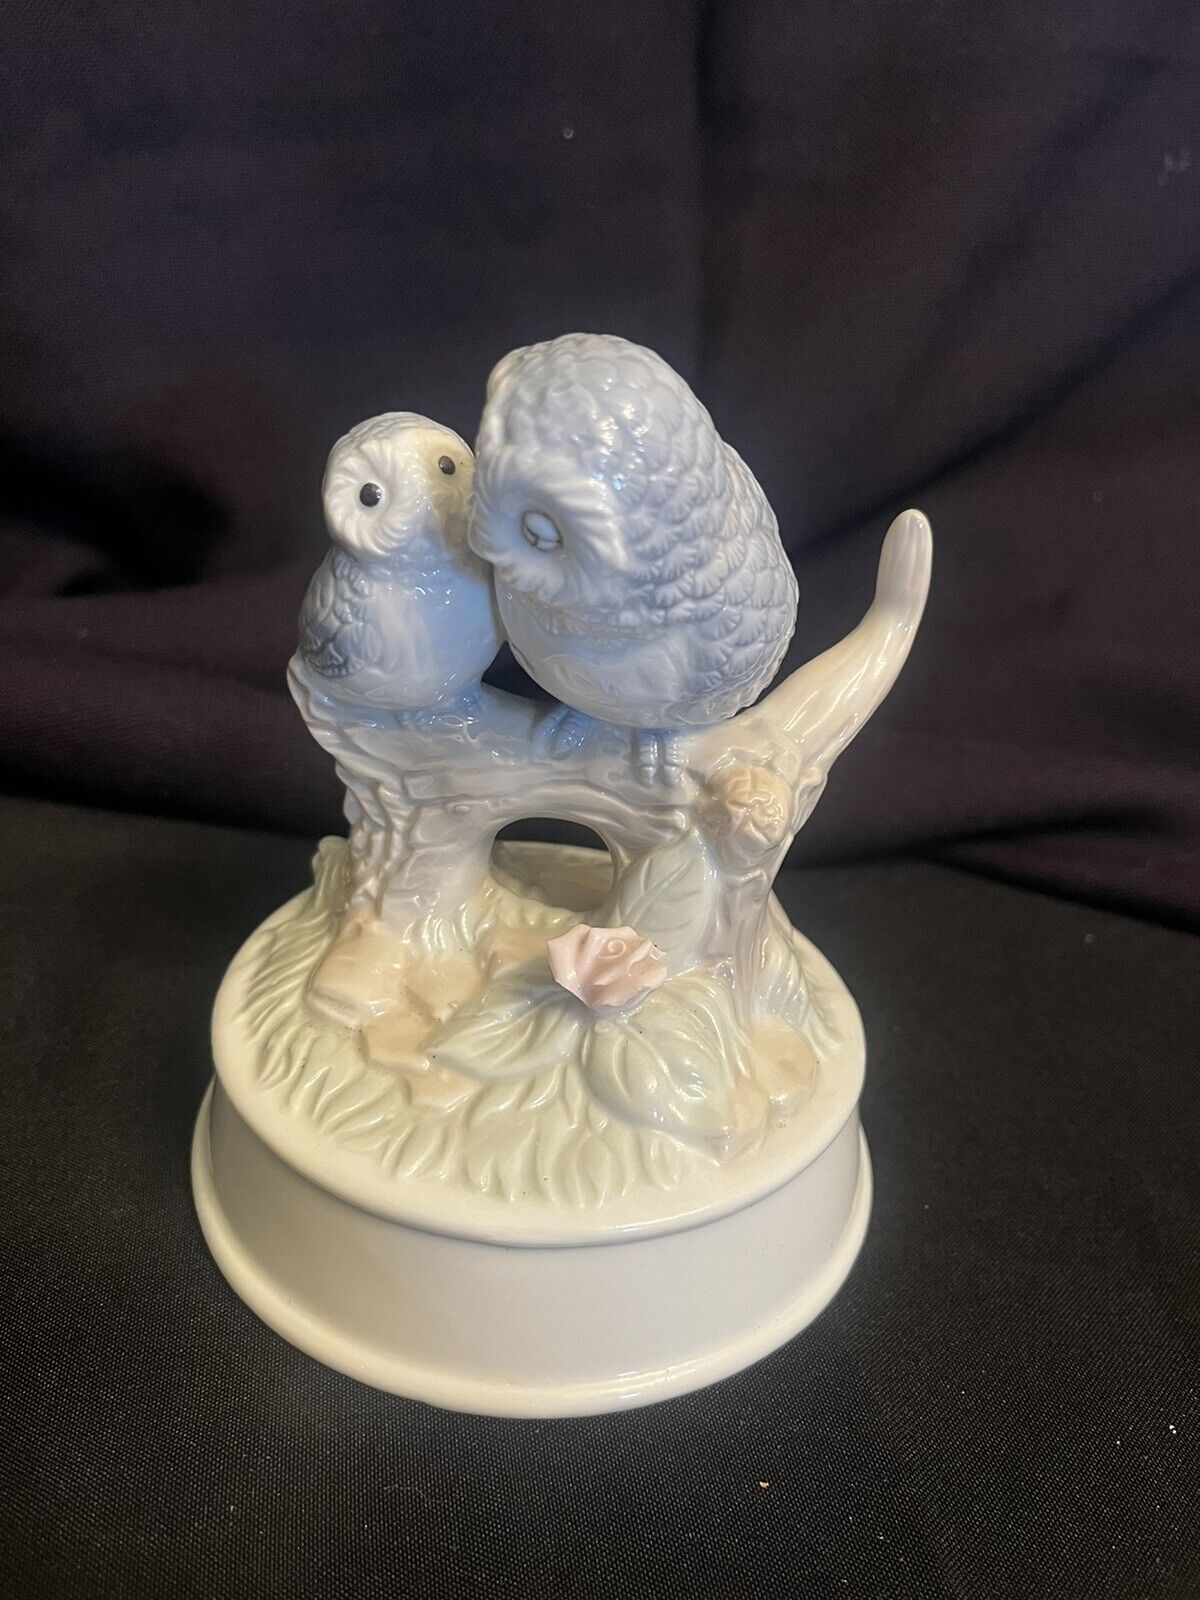 Vintage Otagiri Owls  Ceramic Figurine 6” Tall Missing Music Box.